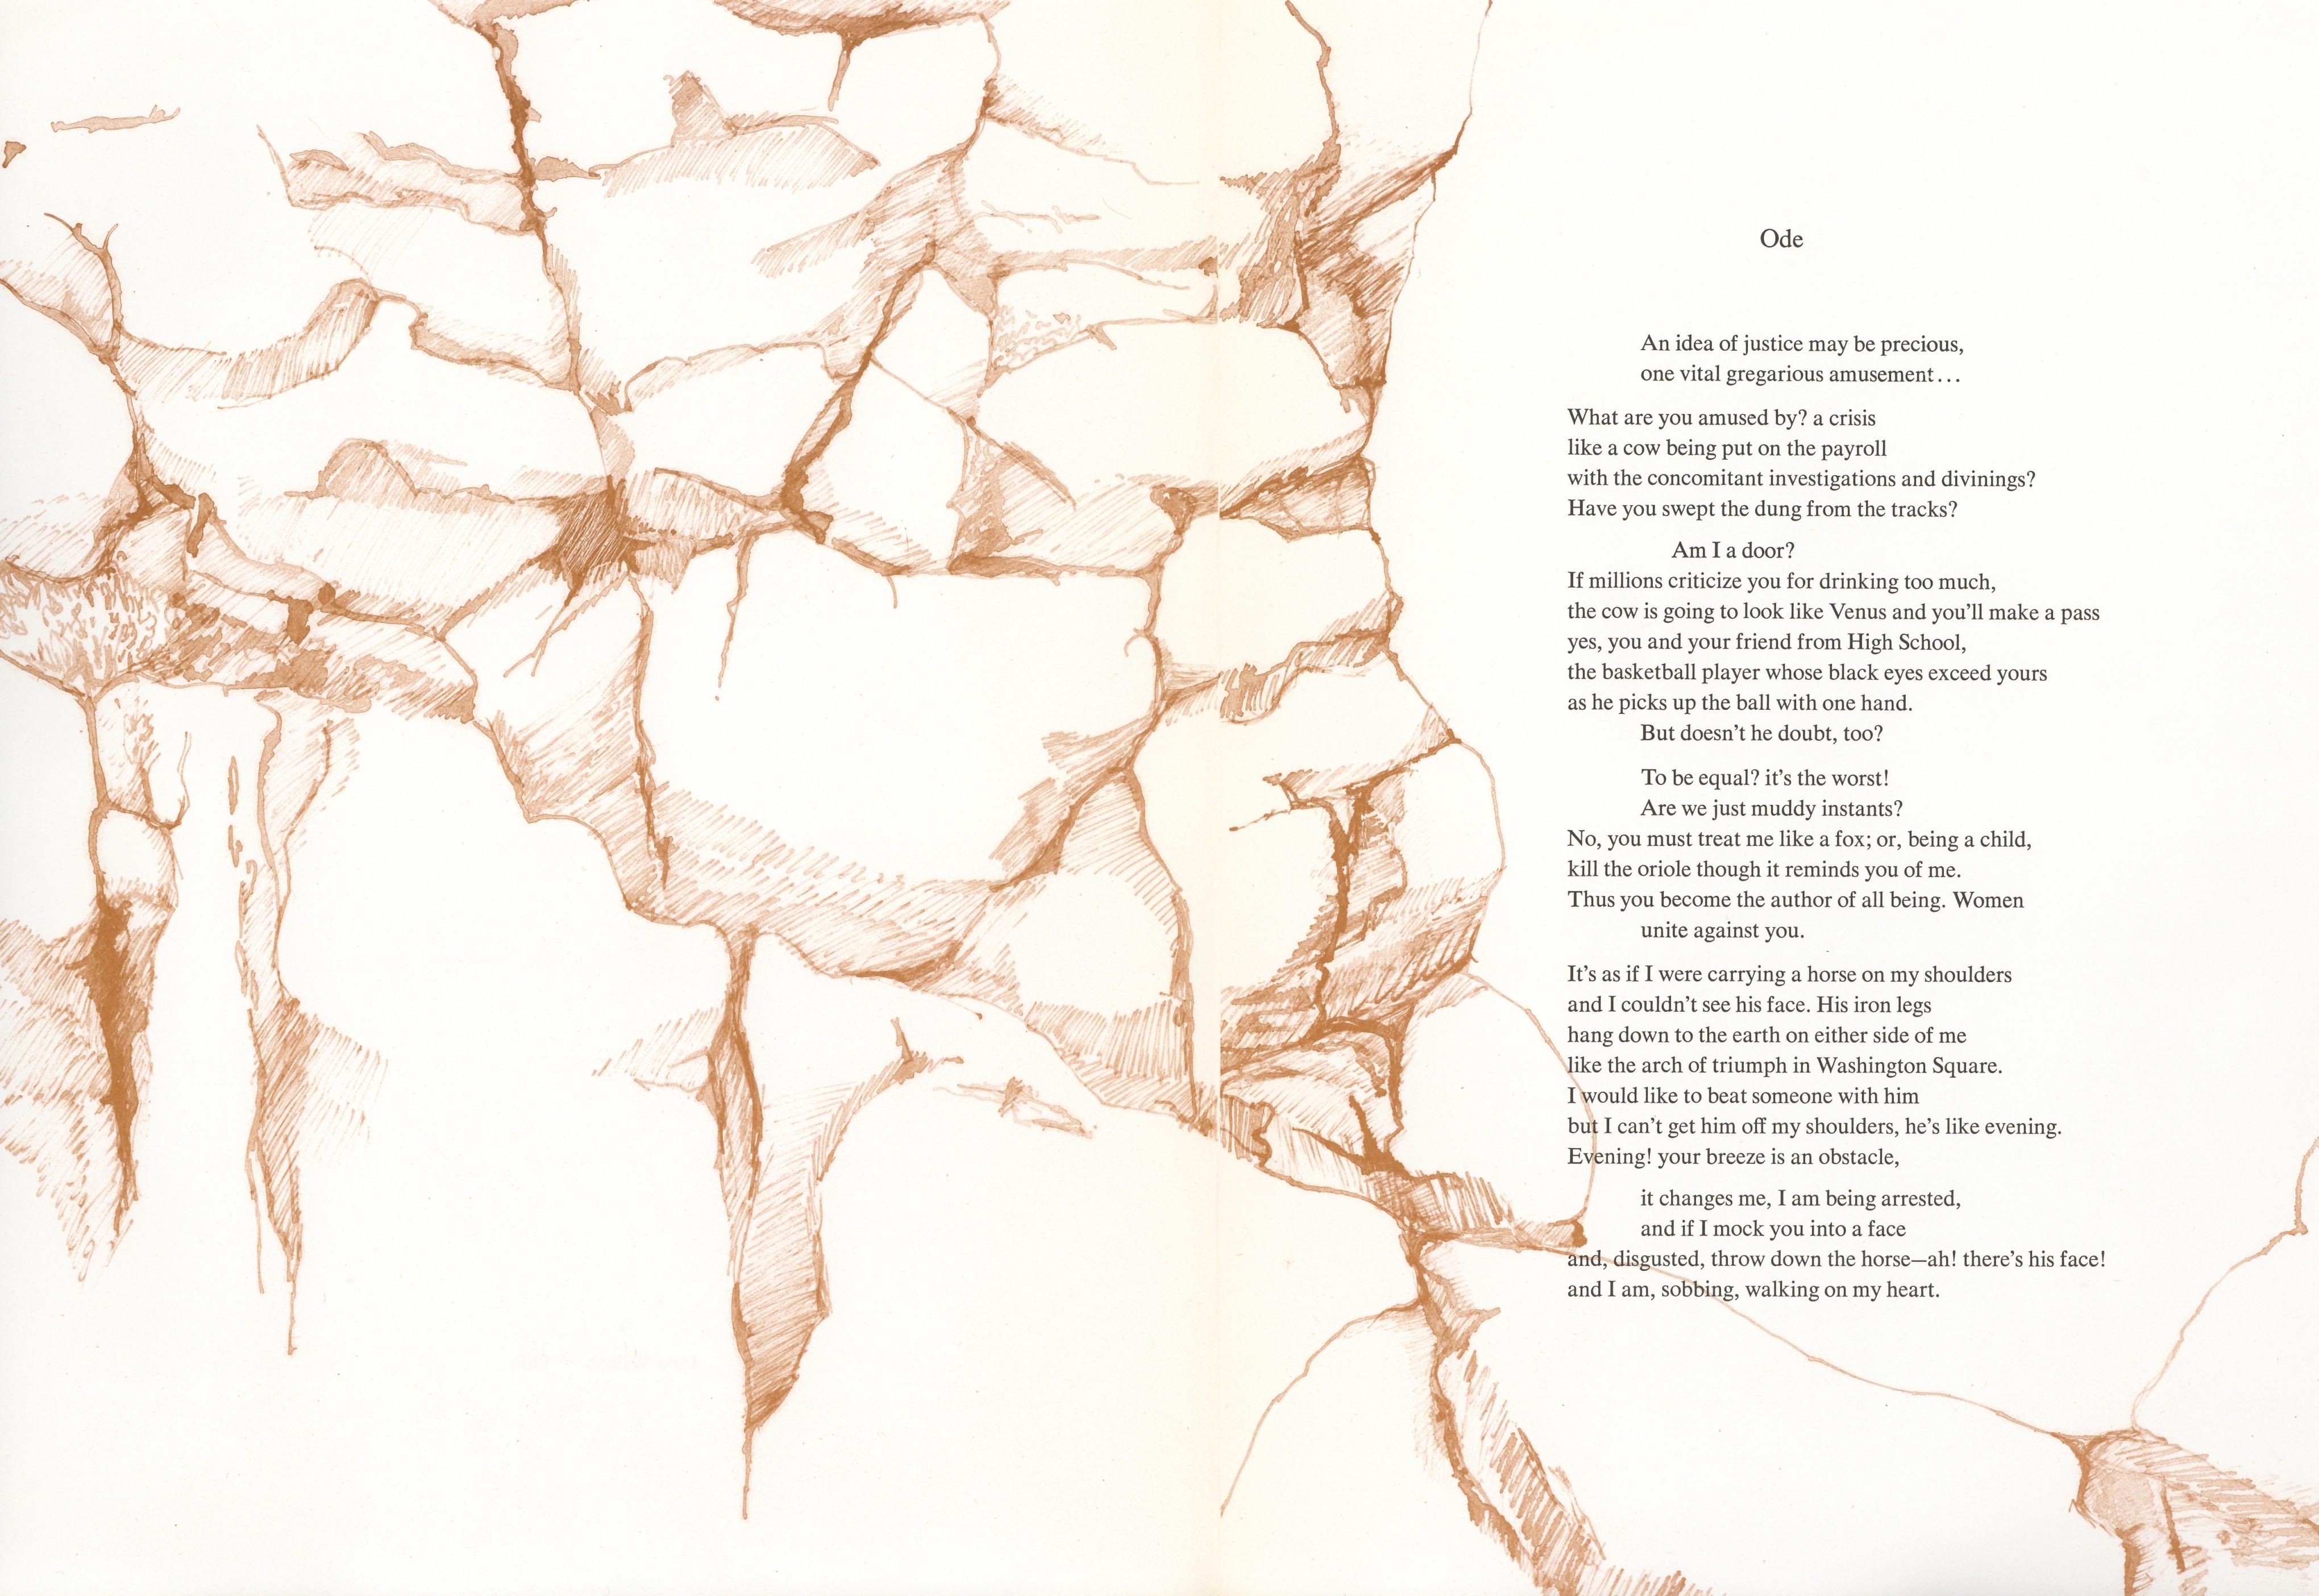 Medium: Lithographie. Aus der Mappe "In Memory of My Feelings", 1967 auf Mohawk Superfine Smooth Papier in einer limitierten Auflage von 2500 Stück gedruckt und in New York vom Museum of Modern Art herausgegeben. Nicht unterzeichnet. 

Jane Wilson